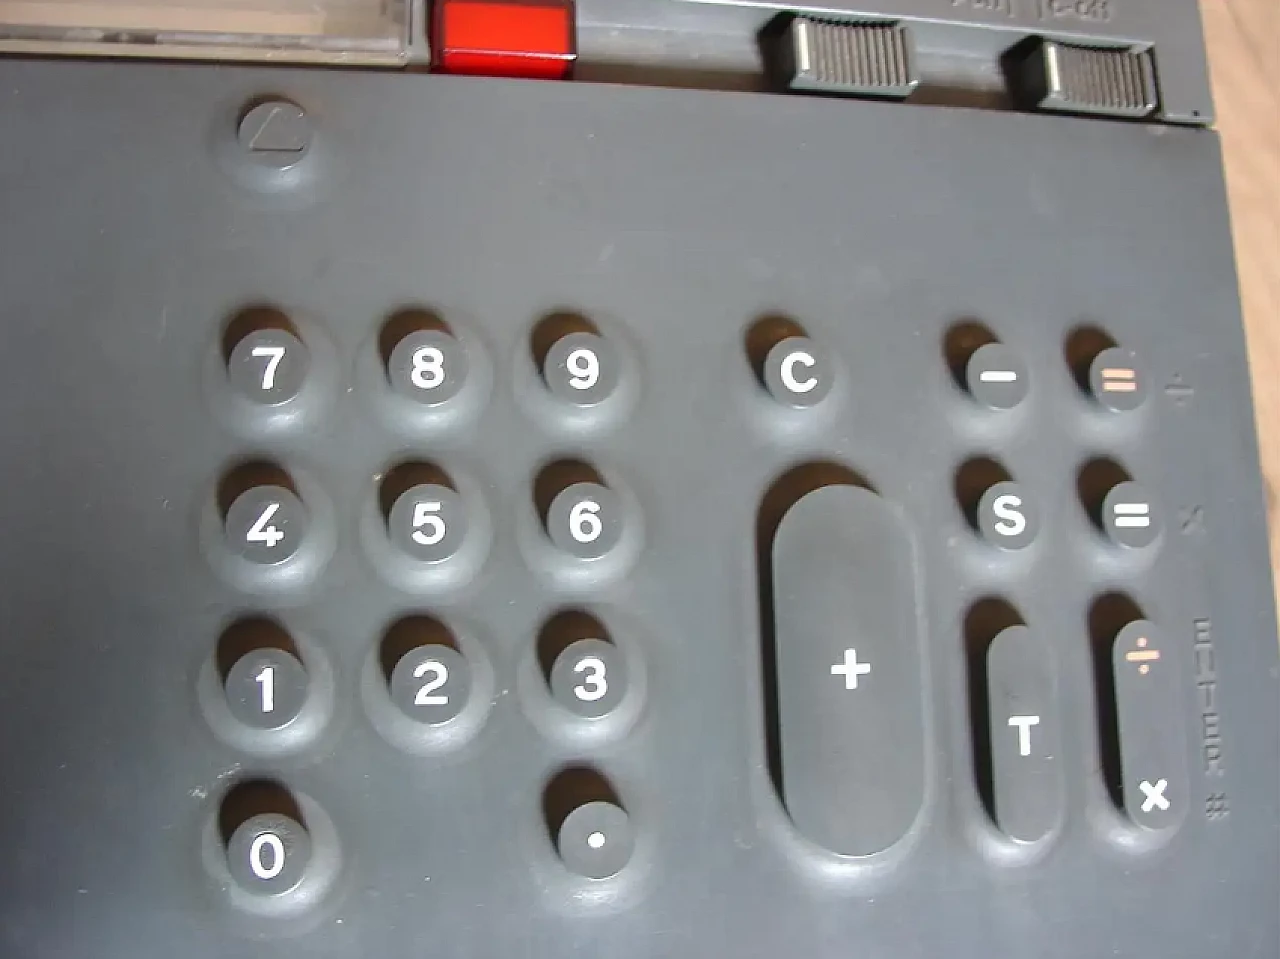 Olivetti Divisumma 28 calculator by Mario Bellini, 1970s 6